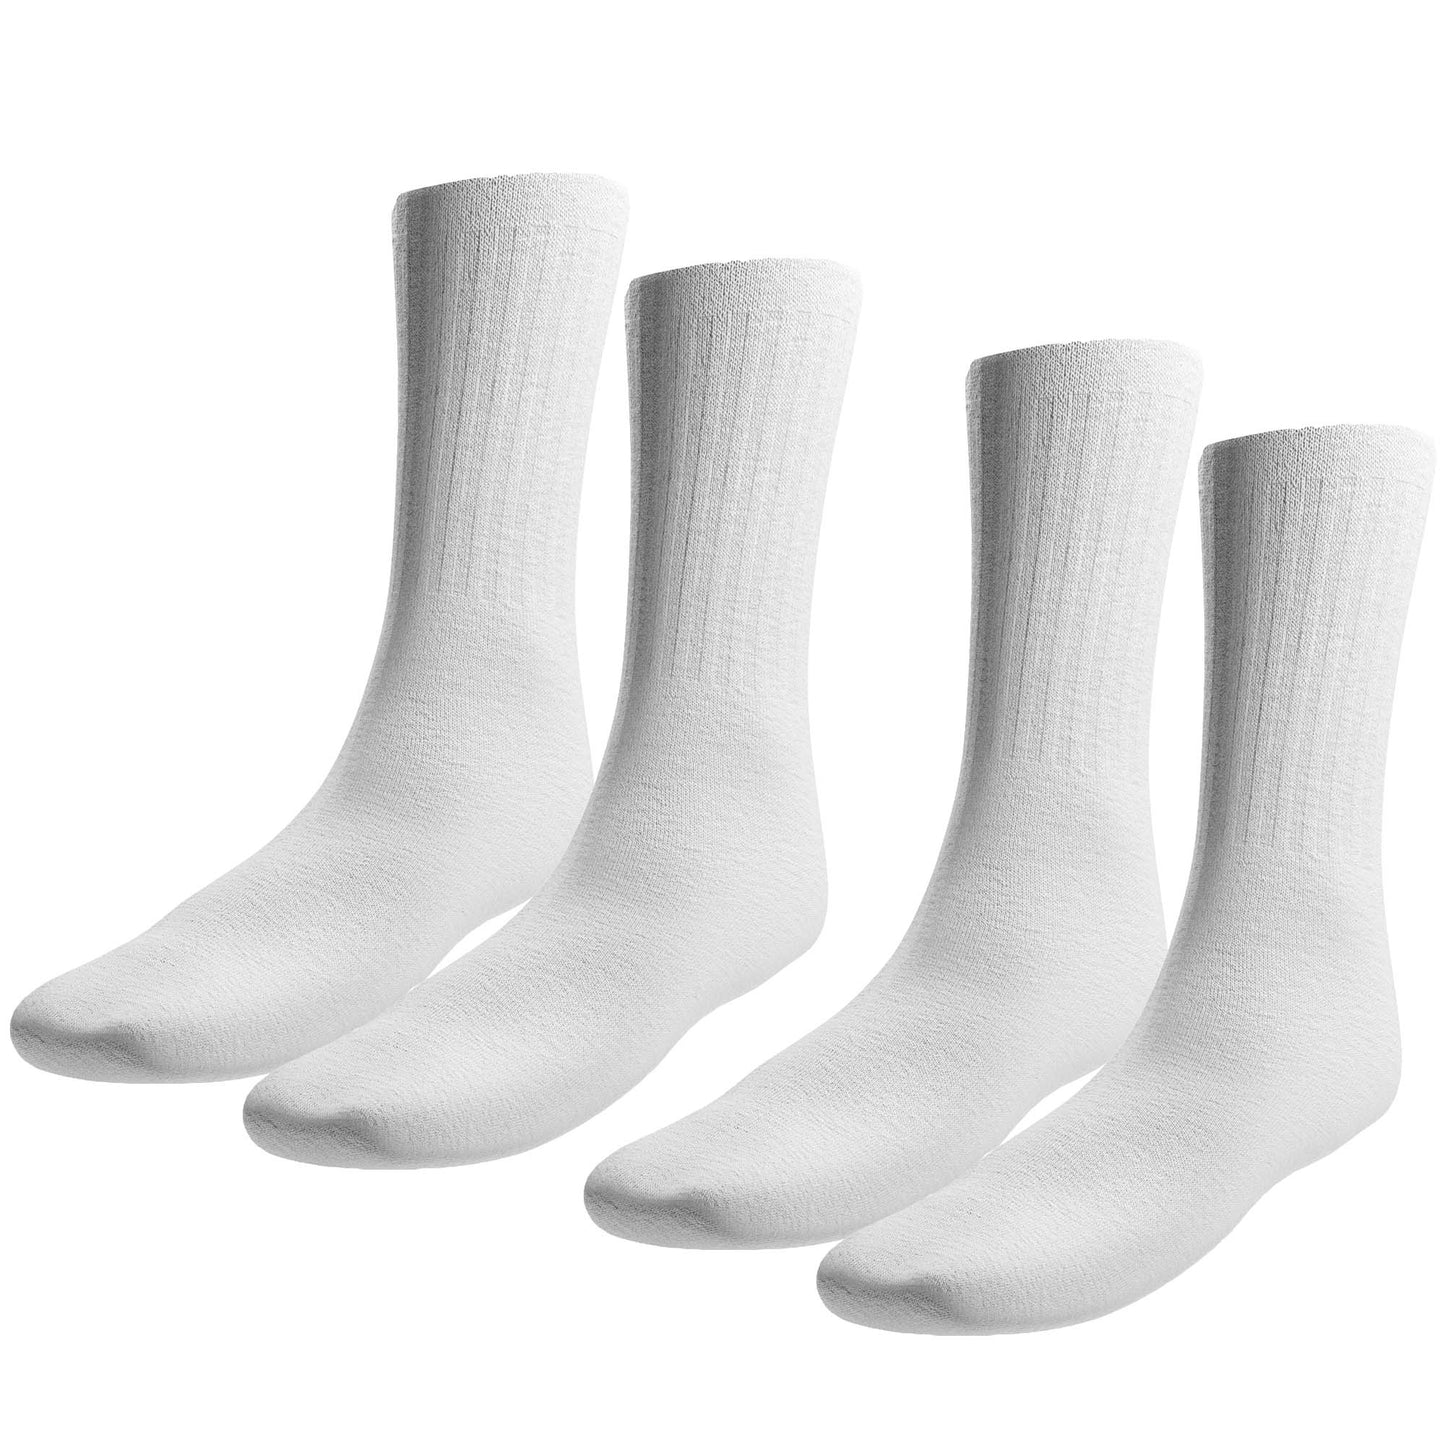 Crew Socks White 6-8 24 Pairs Accessories